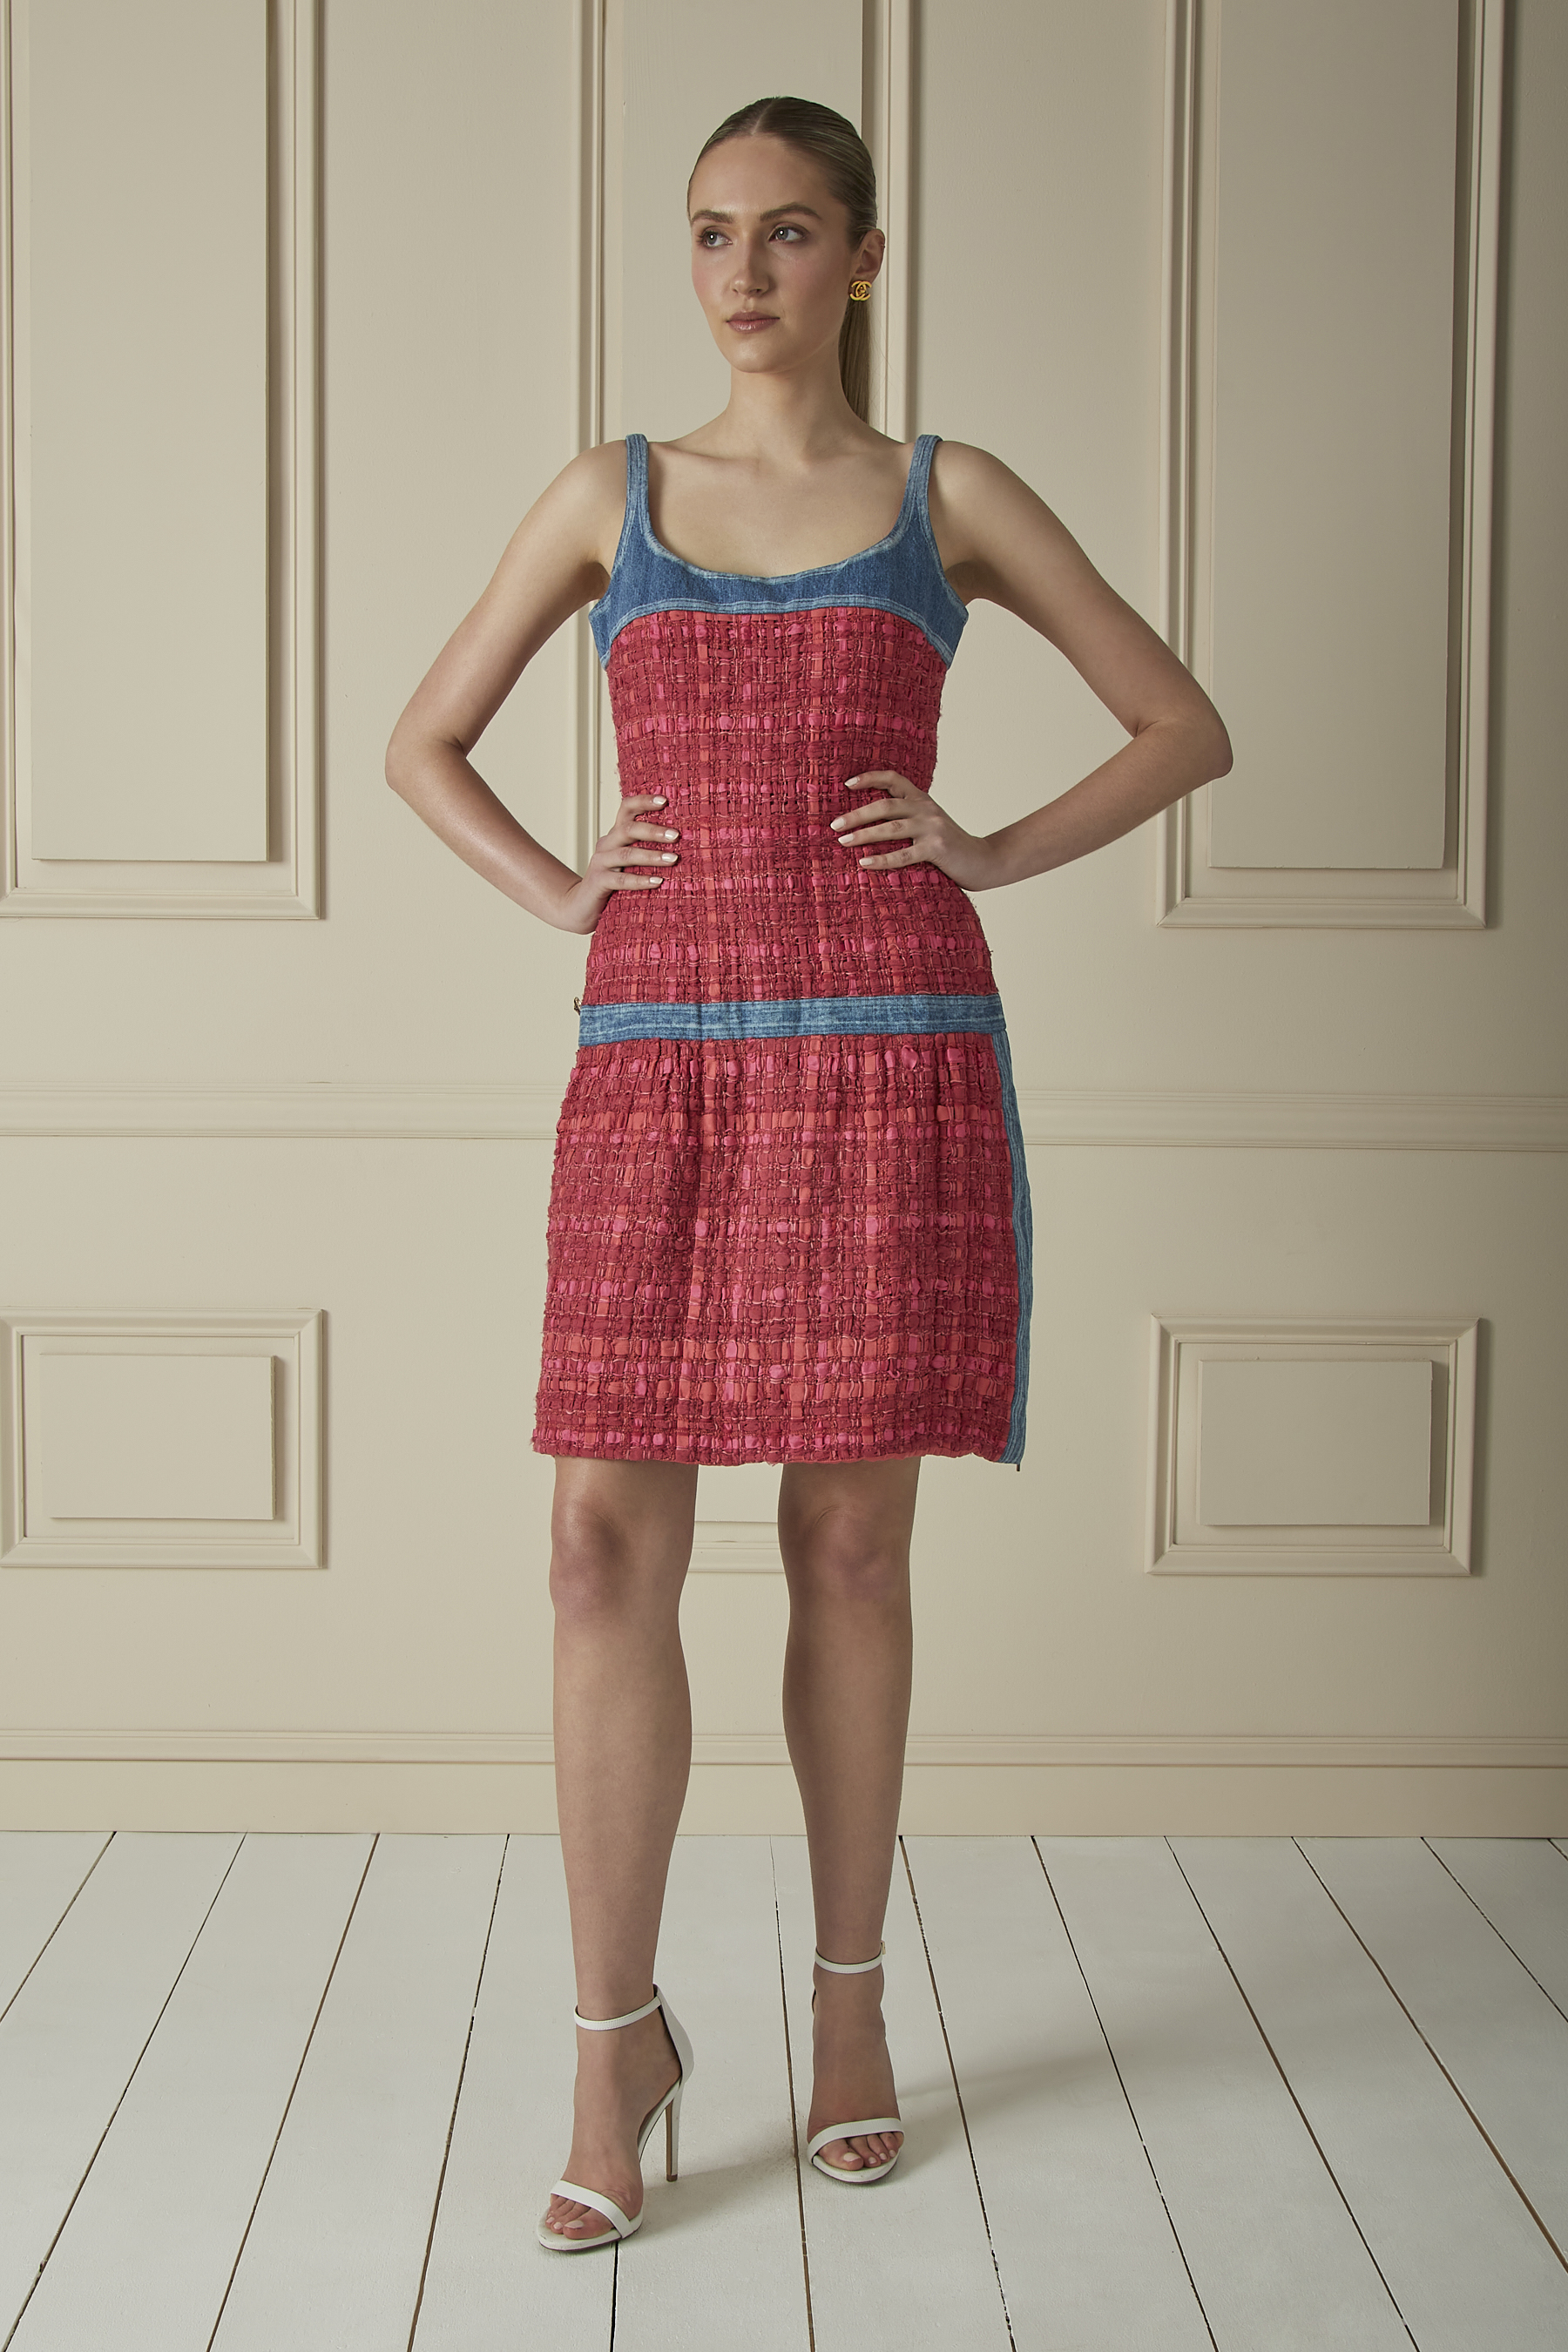 Chanel Solid Tweed Ivory Fringe Tweed Dress Size 42 (FR) - 81% off